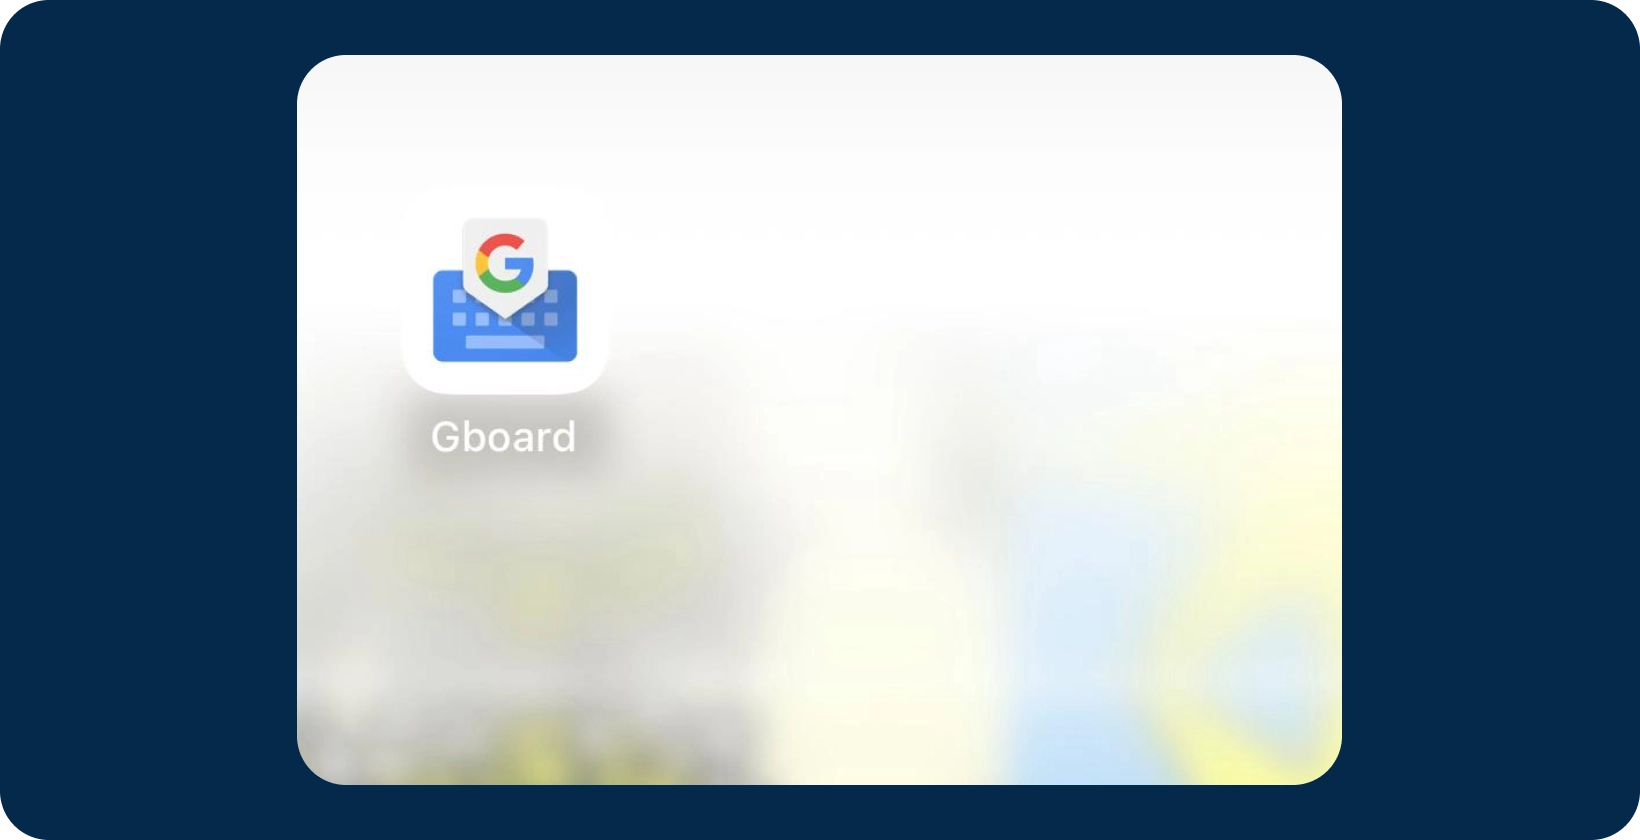 Gboardアプリ、ディクテーション機能を備えたGoogleのキーボード。